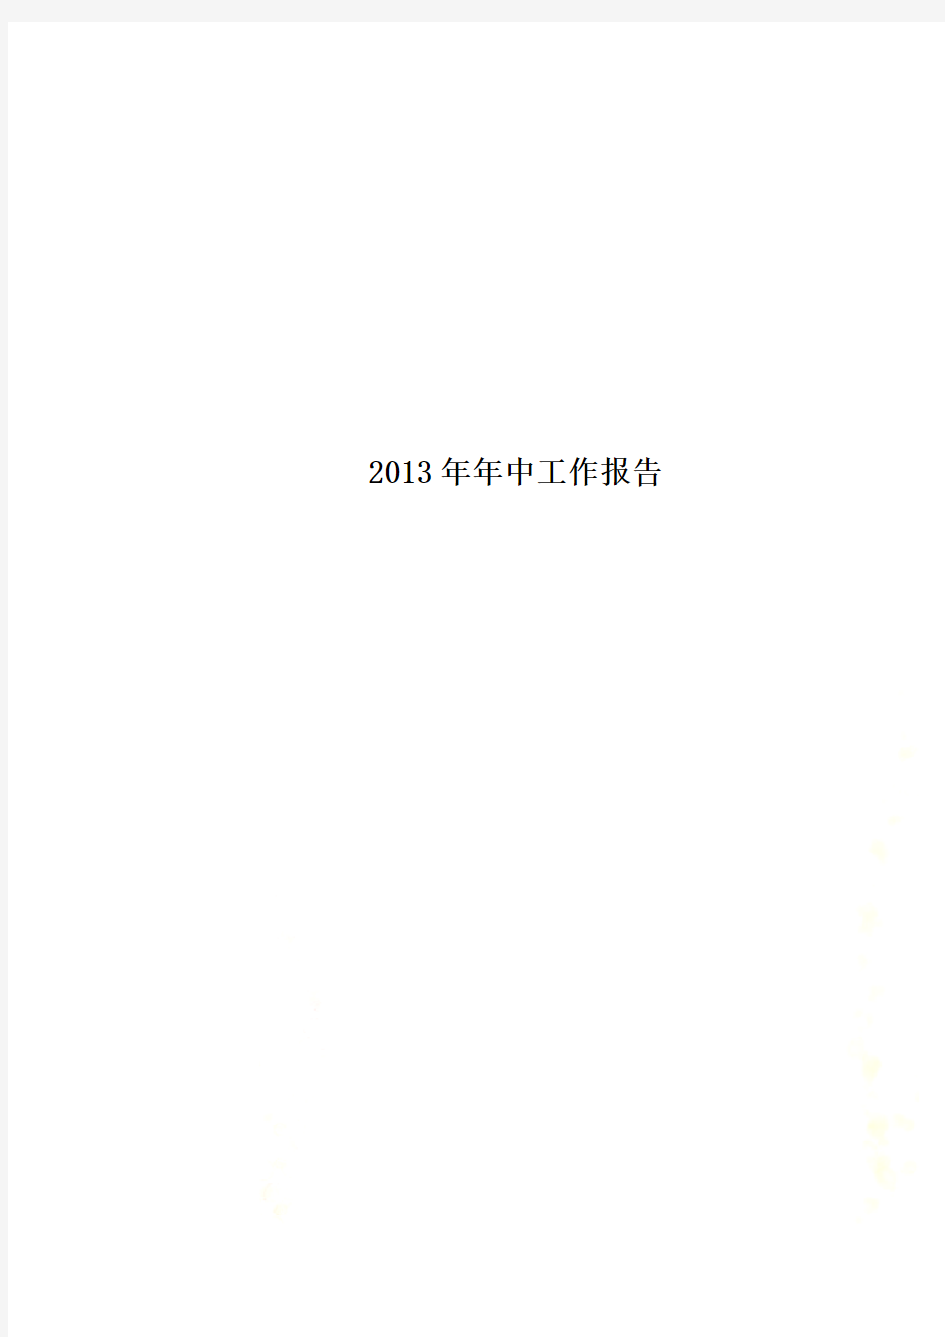 2013年年中工作报告